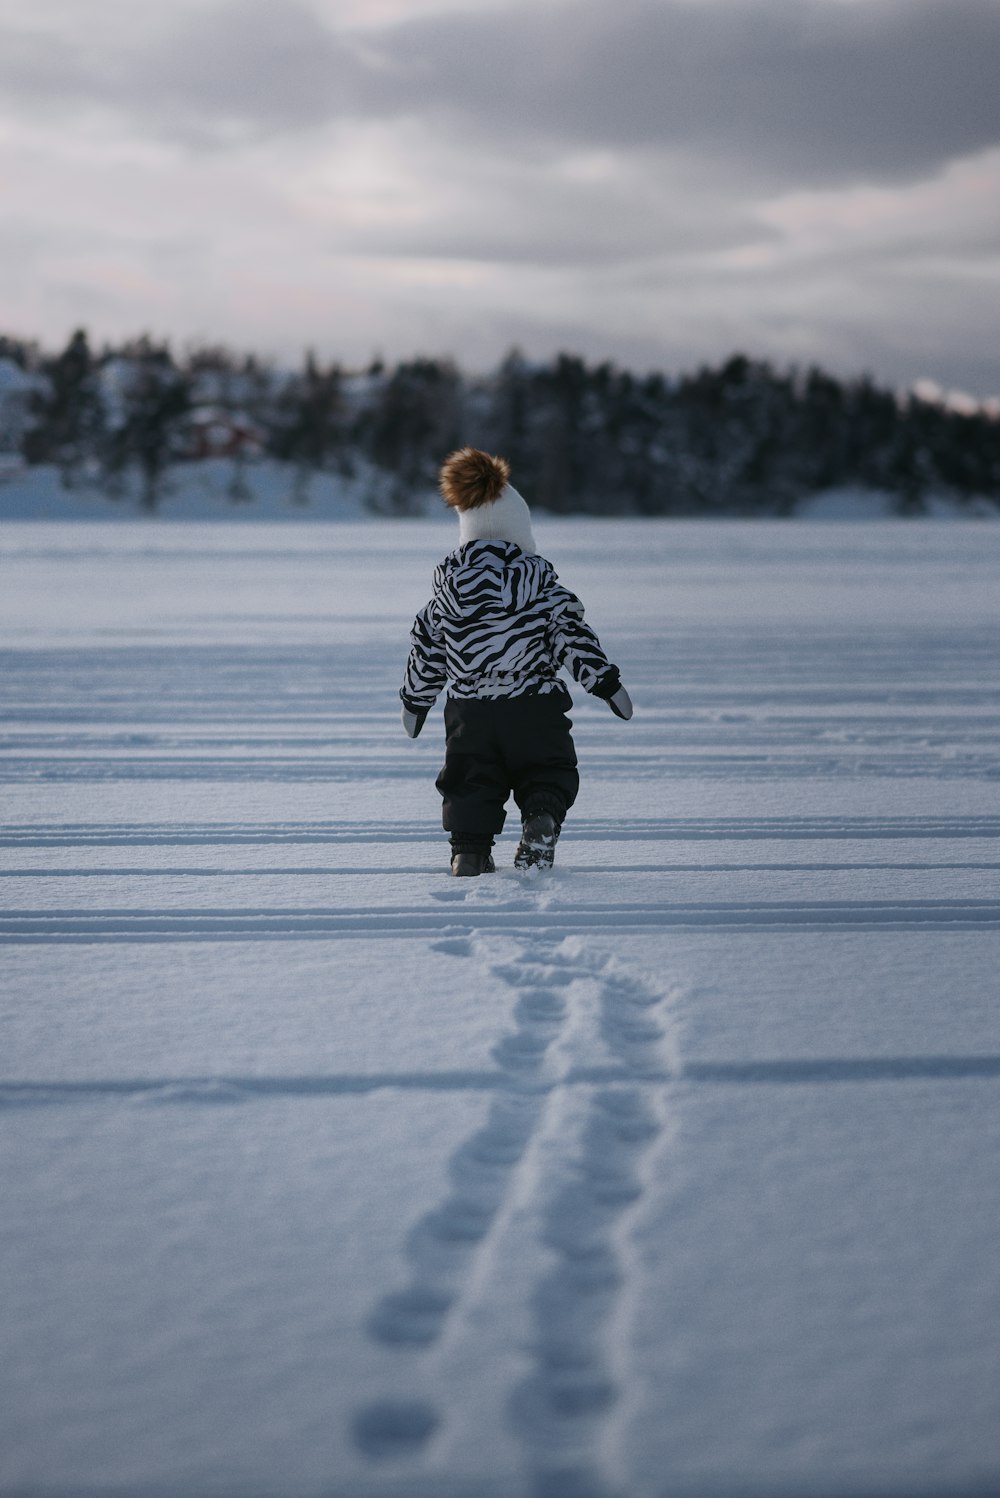 昼間、雪に覆われた地面を歩く黒と白の縞模様のジャケットを着た子供